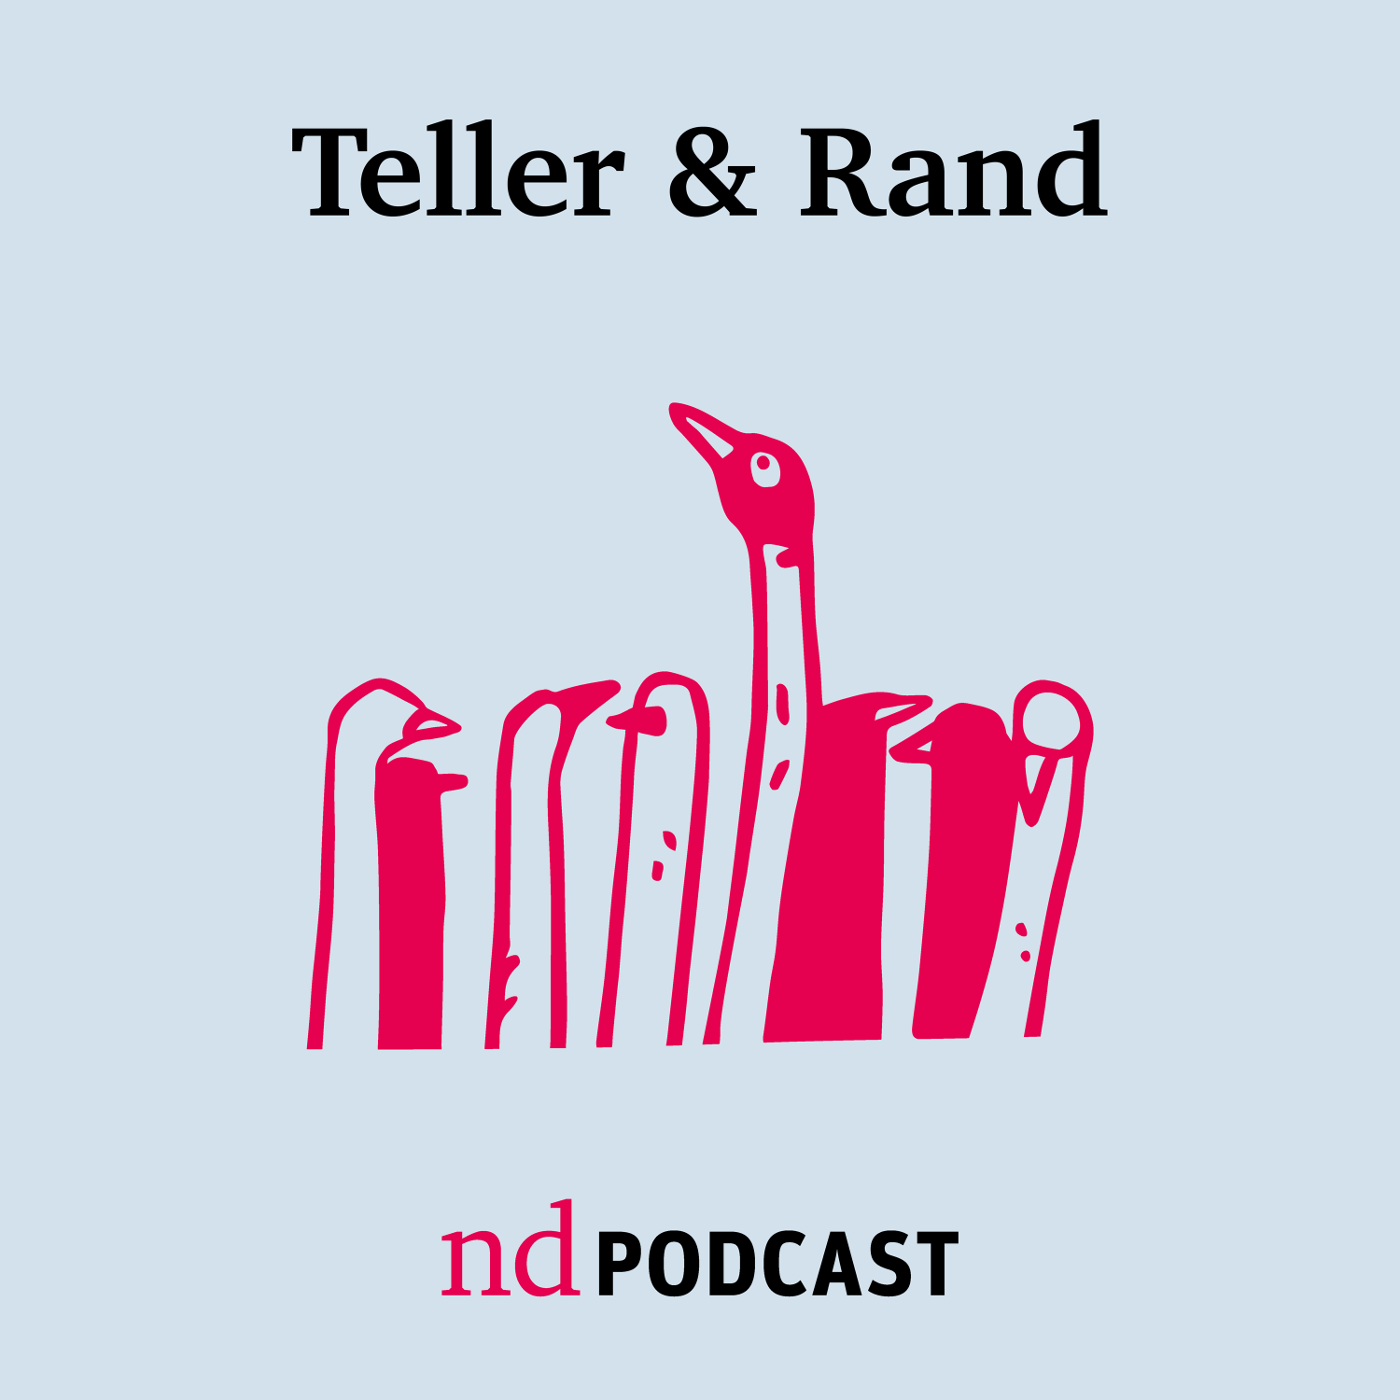 Podcast: Teller & Rand